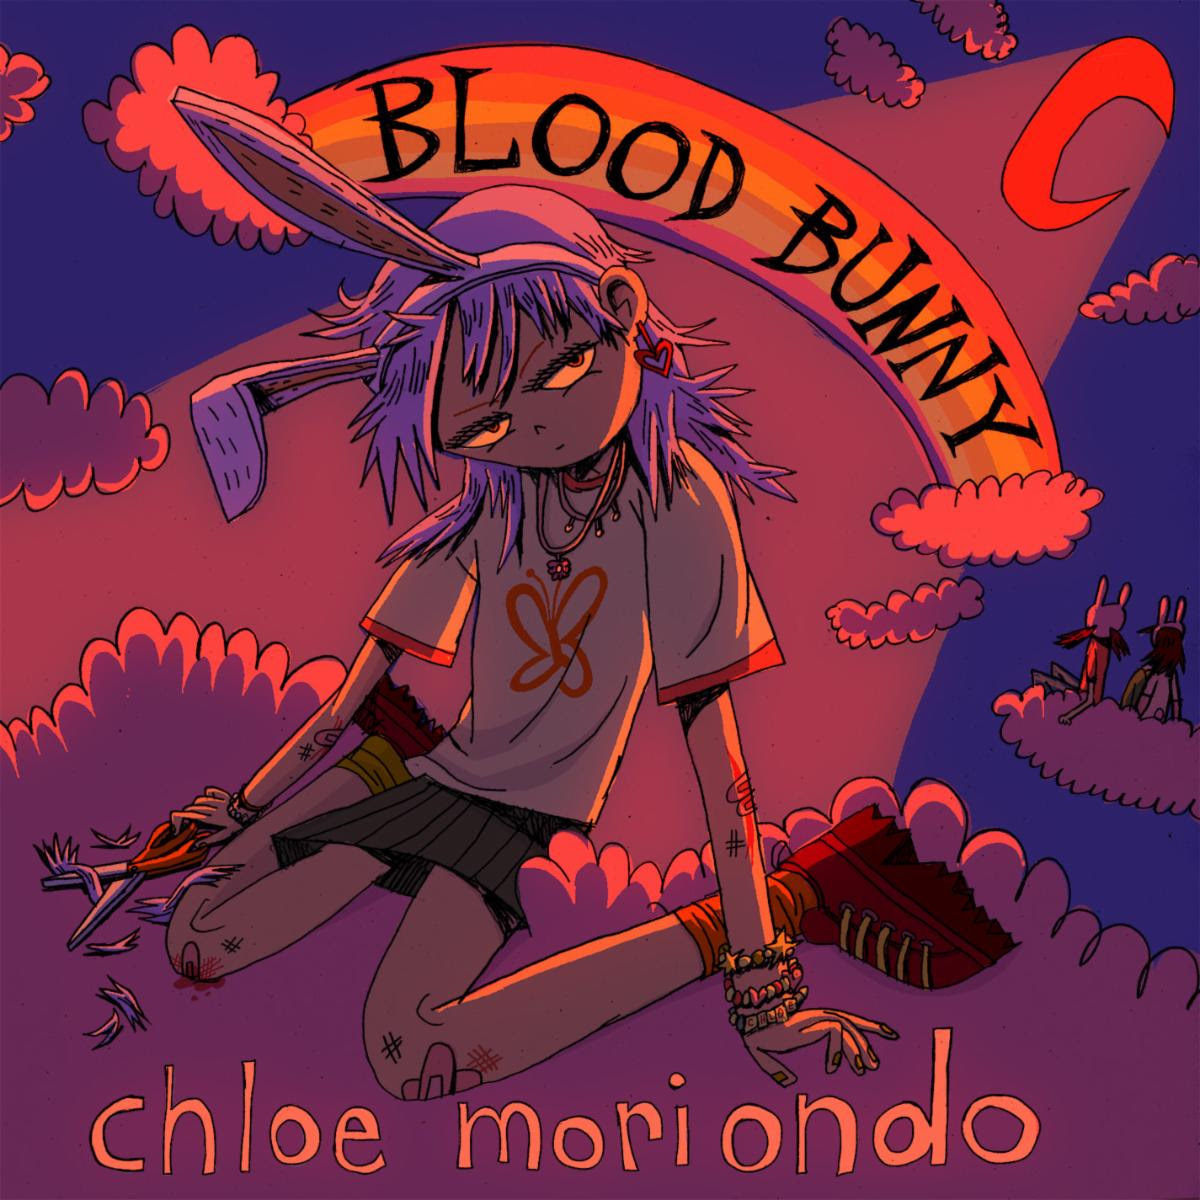 Disco 174 - Semana 19 - De 12 a 19 de maio de 2021 - Chloe Moriondo - Blood Bunny Blood-bunny